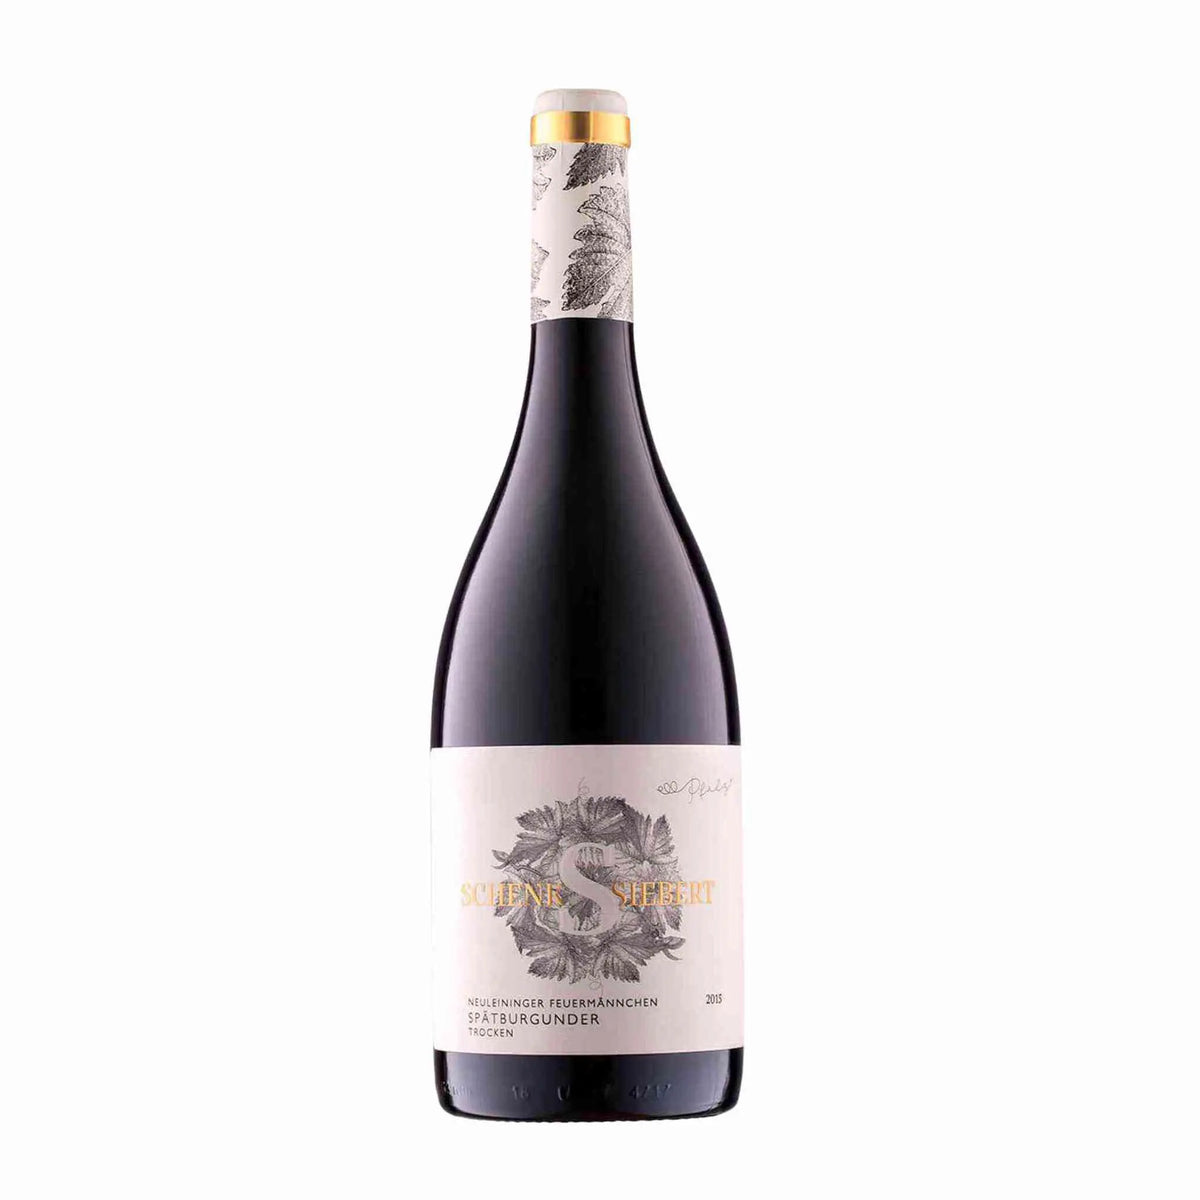 Weingut Schenk Siebert-Rotwein-Pinot Noir-2019 Neuleininger Feuermännchen Spätburgunder-WINECOM